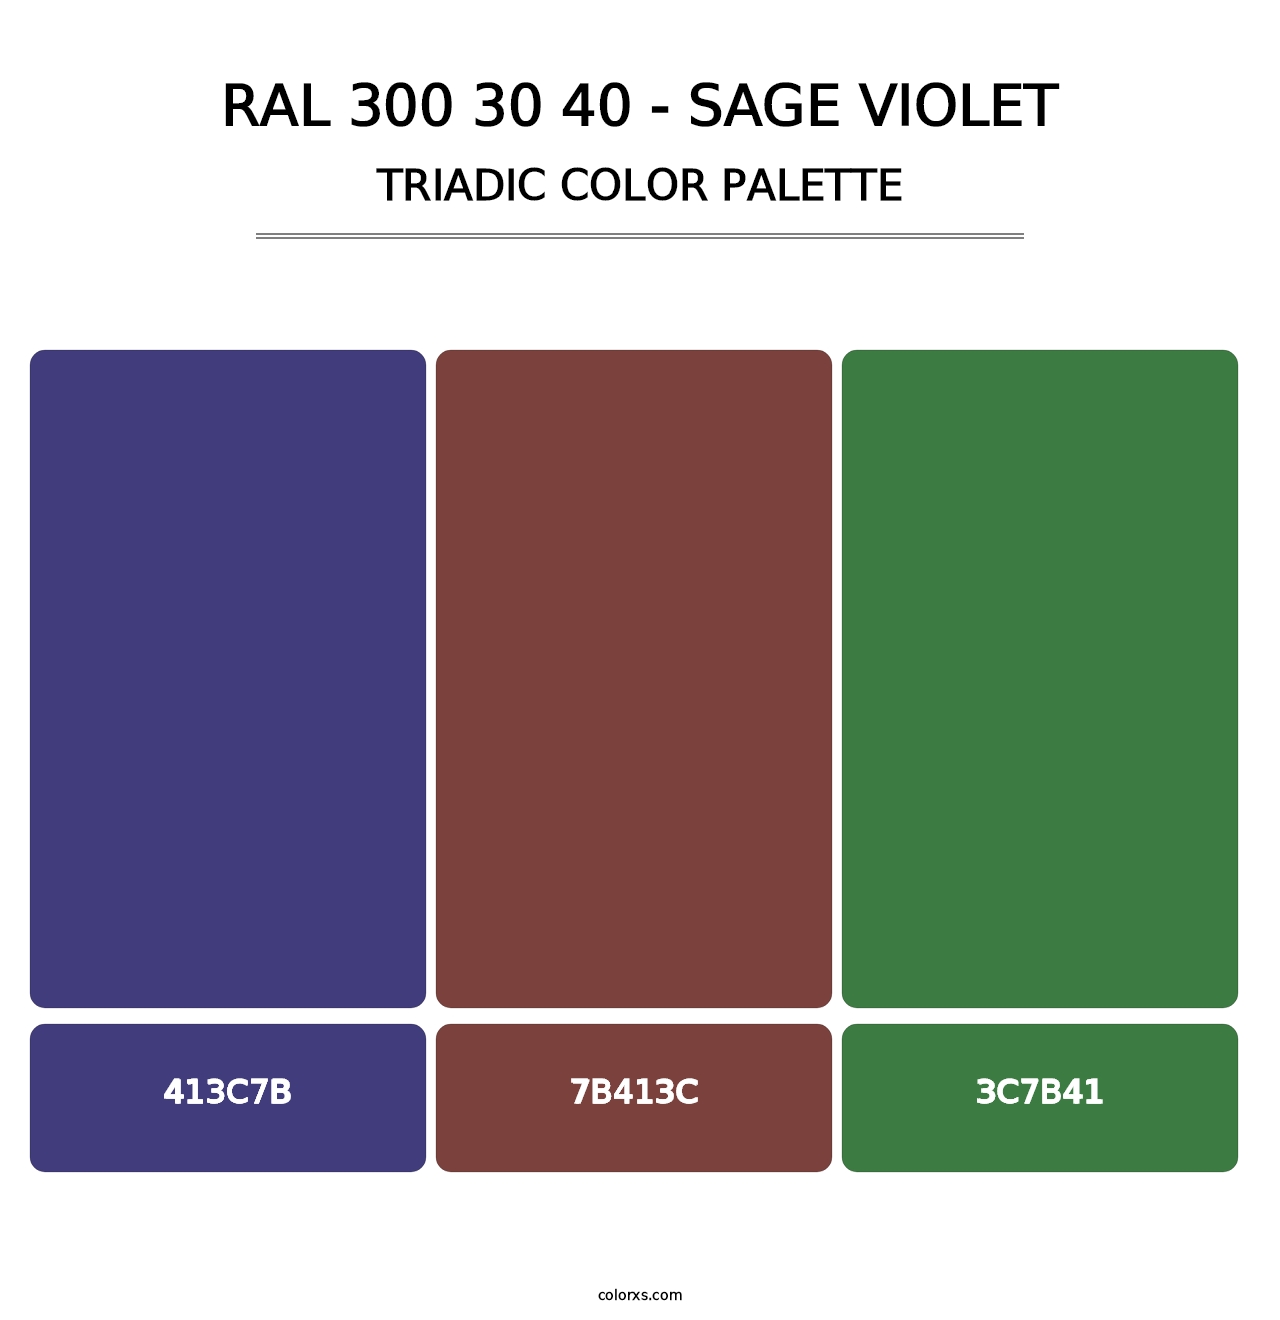 RAL 300 30 40 - Sage Violet - Triadic Color Palette